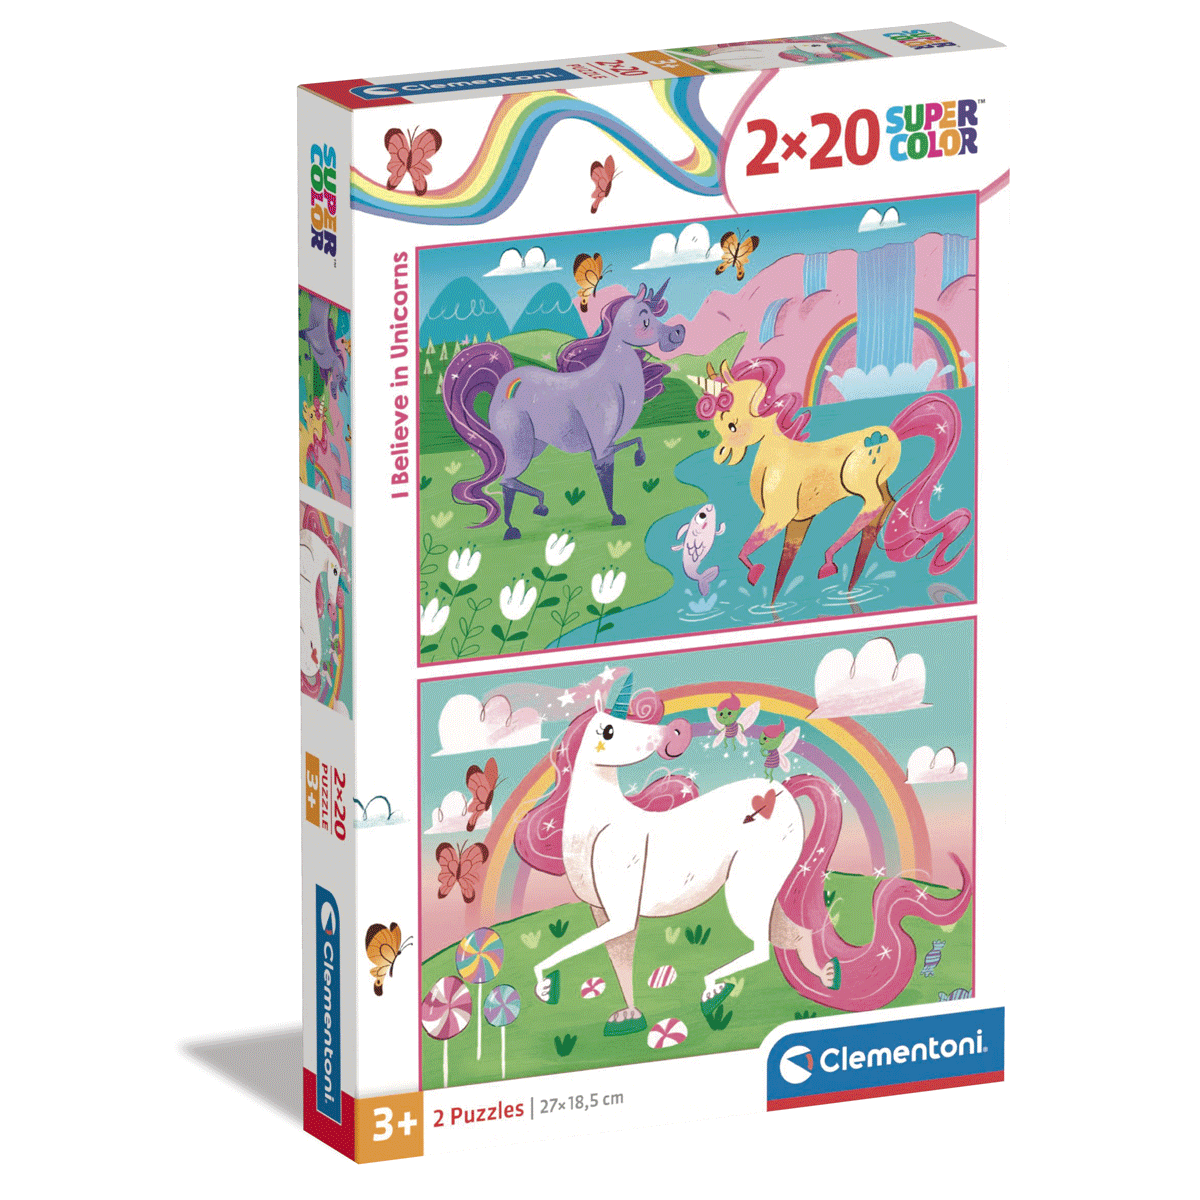 Clementoni supercolor puzzle  brilliant i believe in unicorns - 2x20 pezzi, puzzle bambini 3 anni - CLEMENTONI